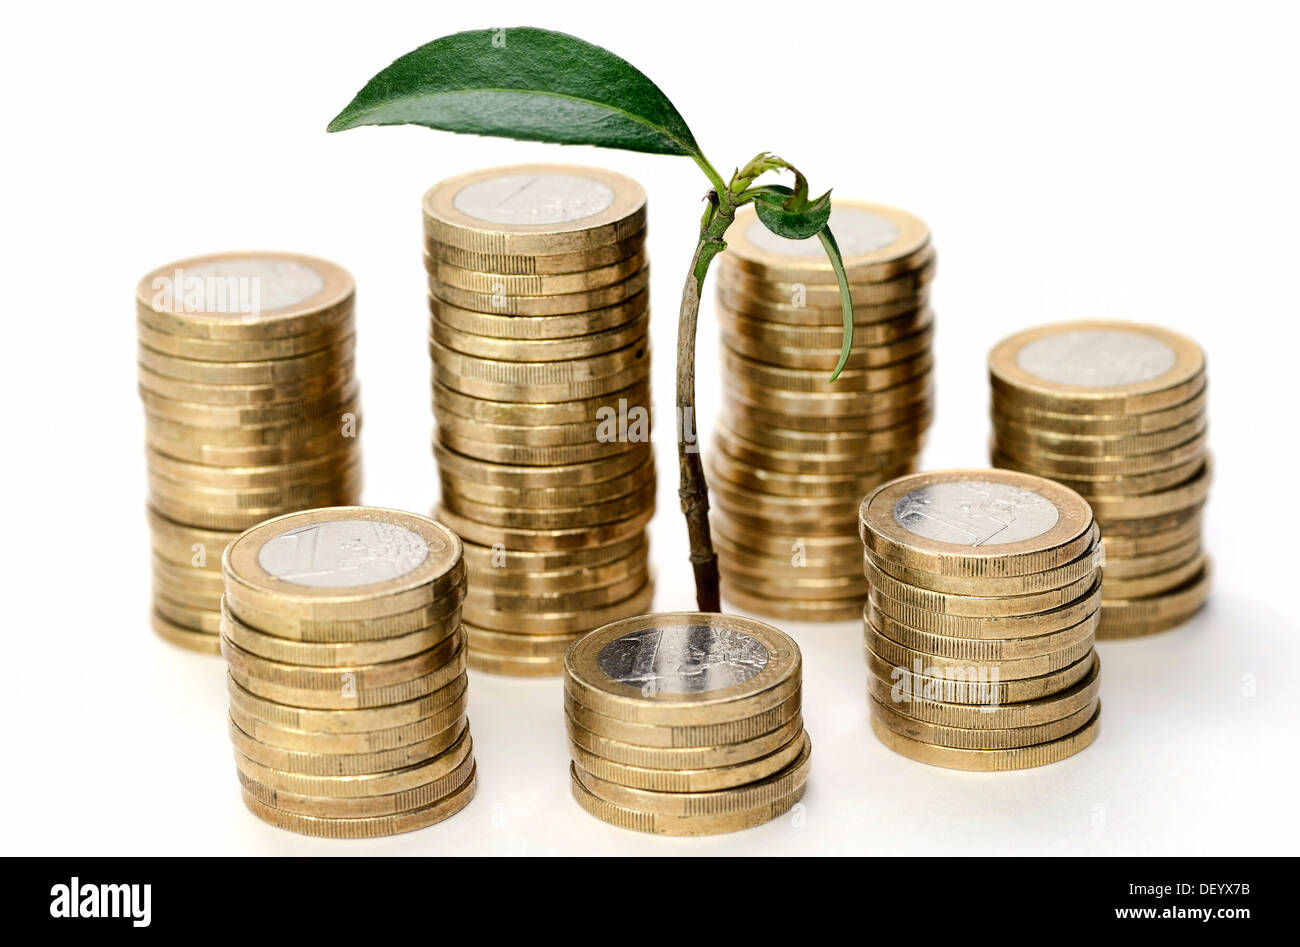 Grüner Trieb wächst dazwischen Münzen, symbolisches Bild für Investitionen, Deutschland Stockfoto